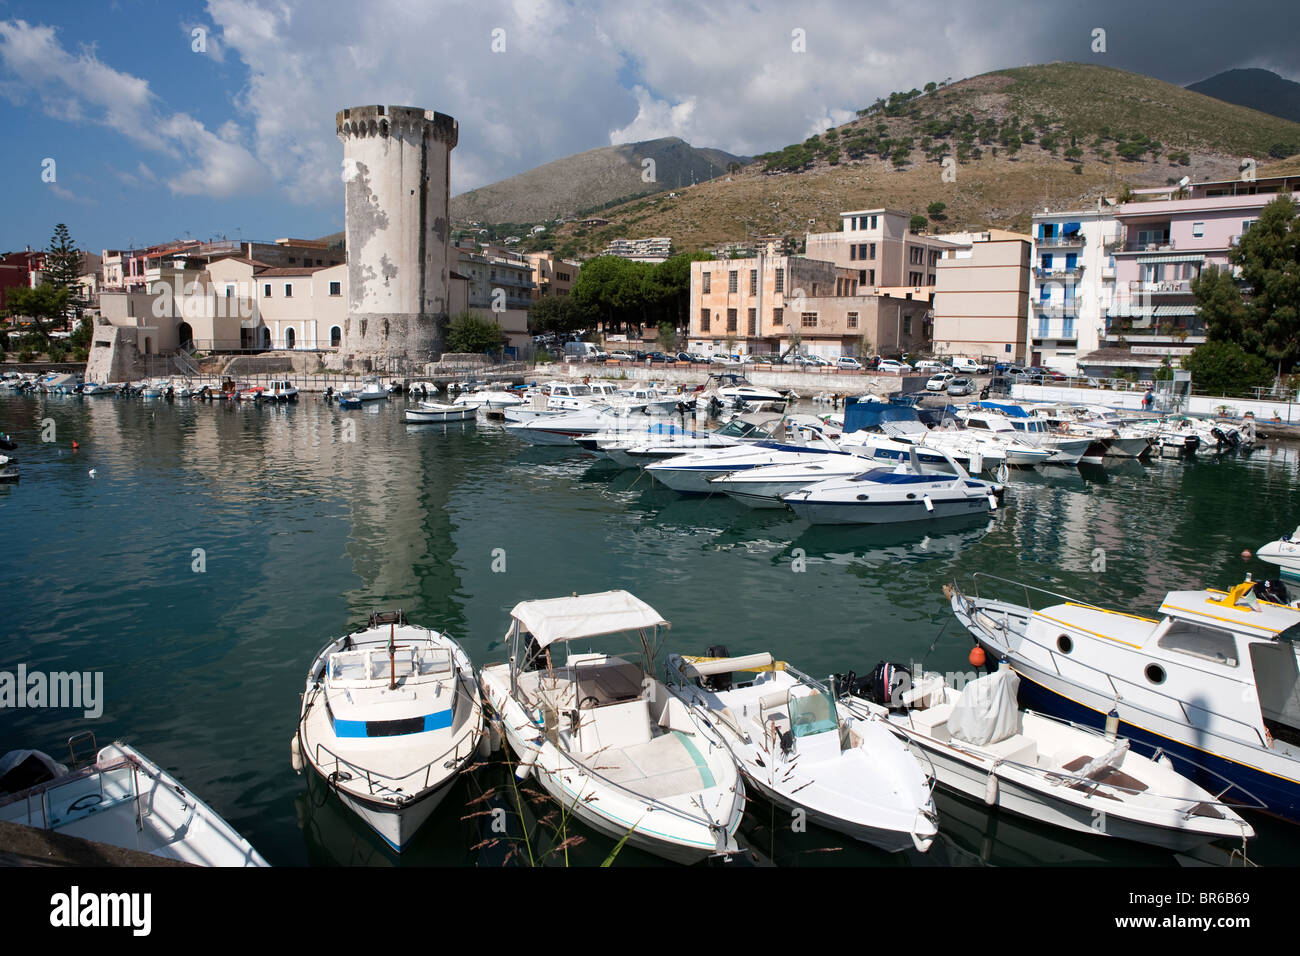 Torre di Mola turistico barche nel piccolo porto di Formia Italia Foto  stock - Alamy